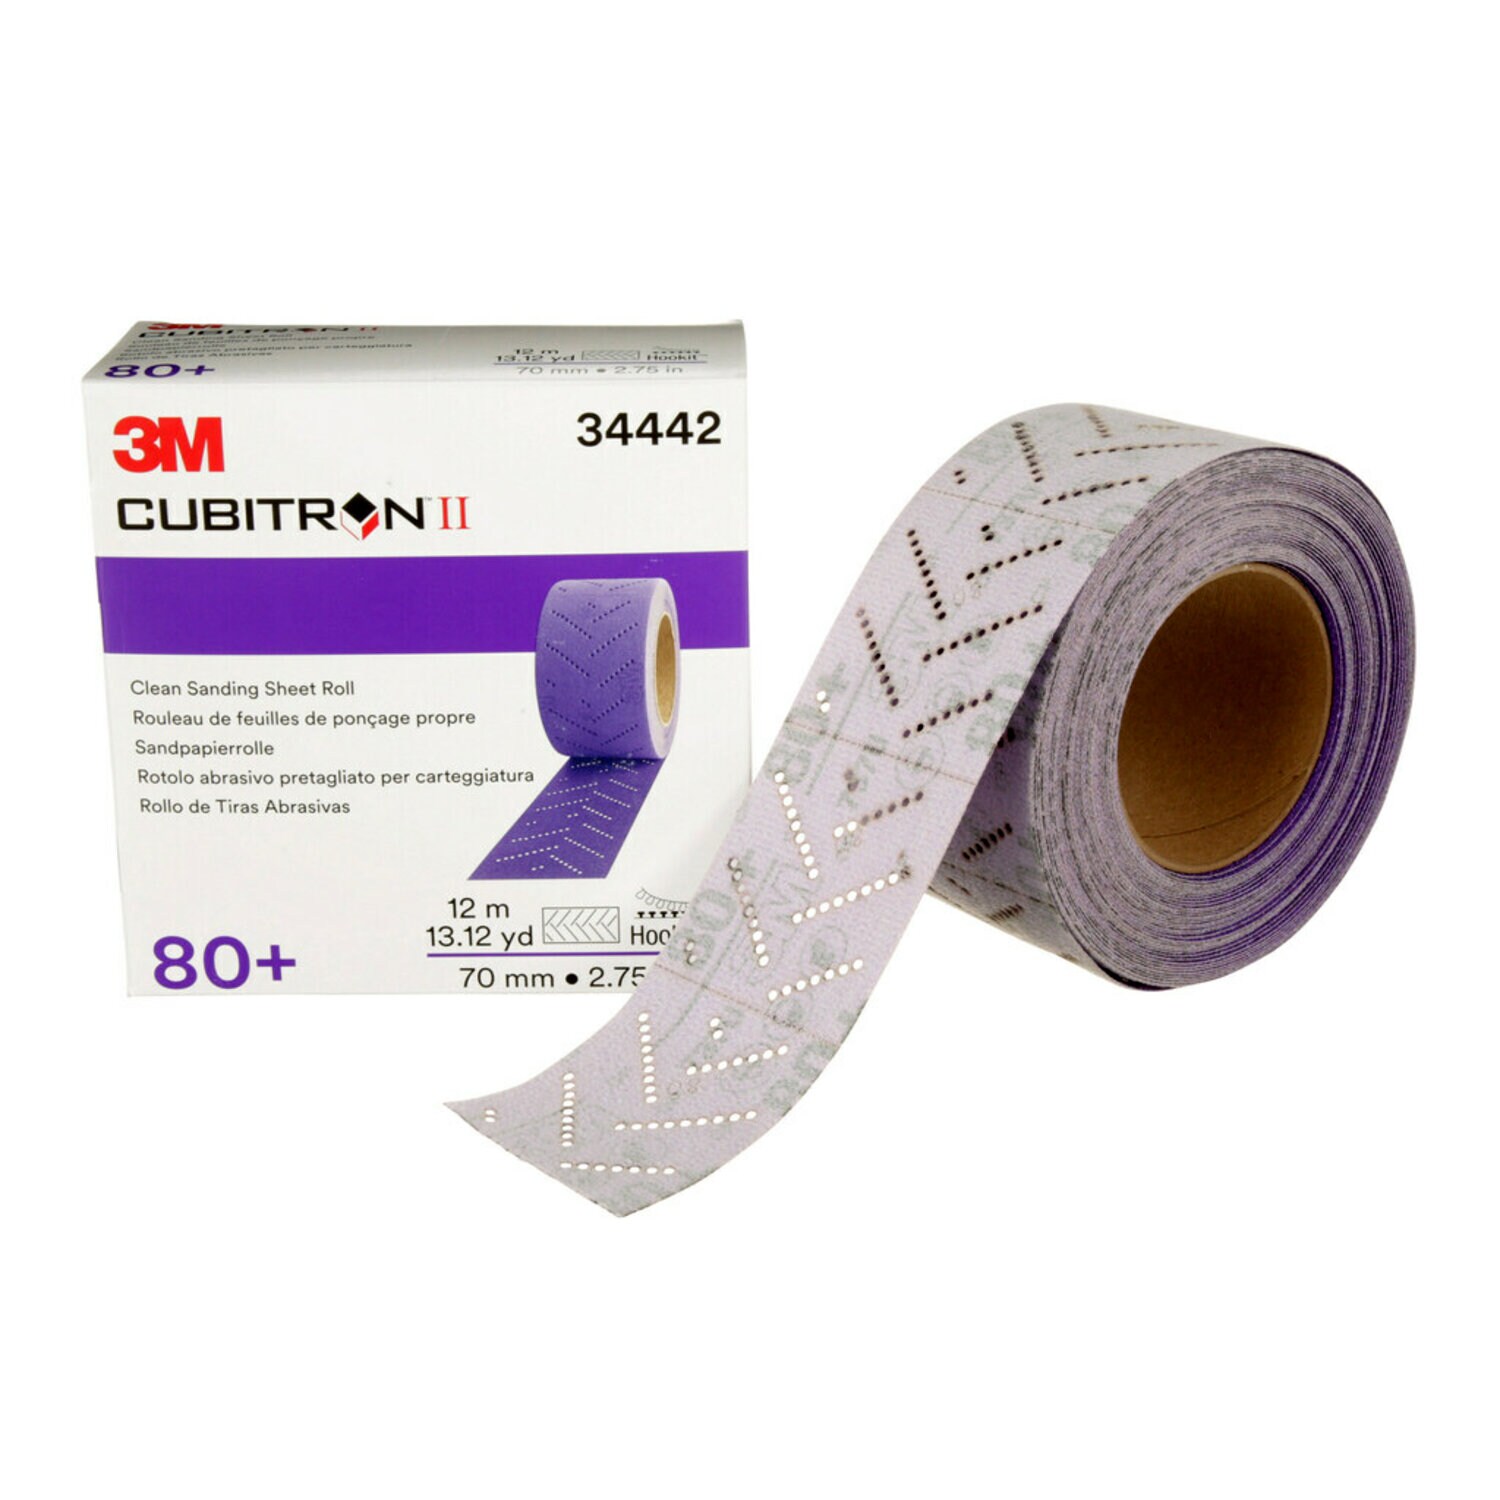 7100150711 - 3M Cubitron II Hookit Clean Sanding Sheet Roll, 34442, 80+ grade, 70
mm x 12 m, 5 rolls per case